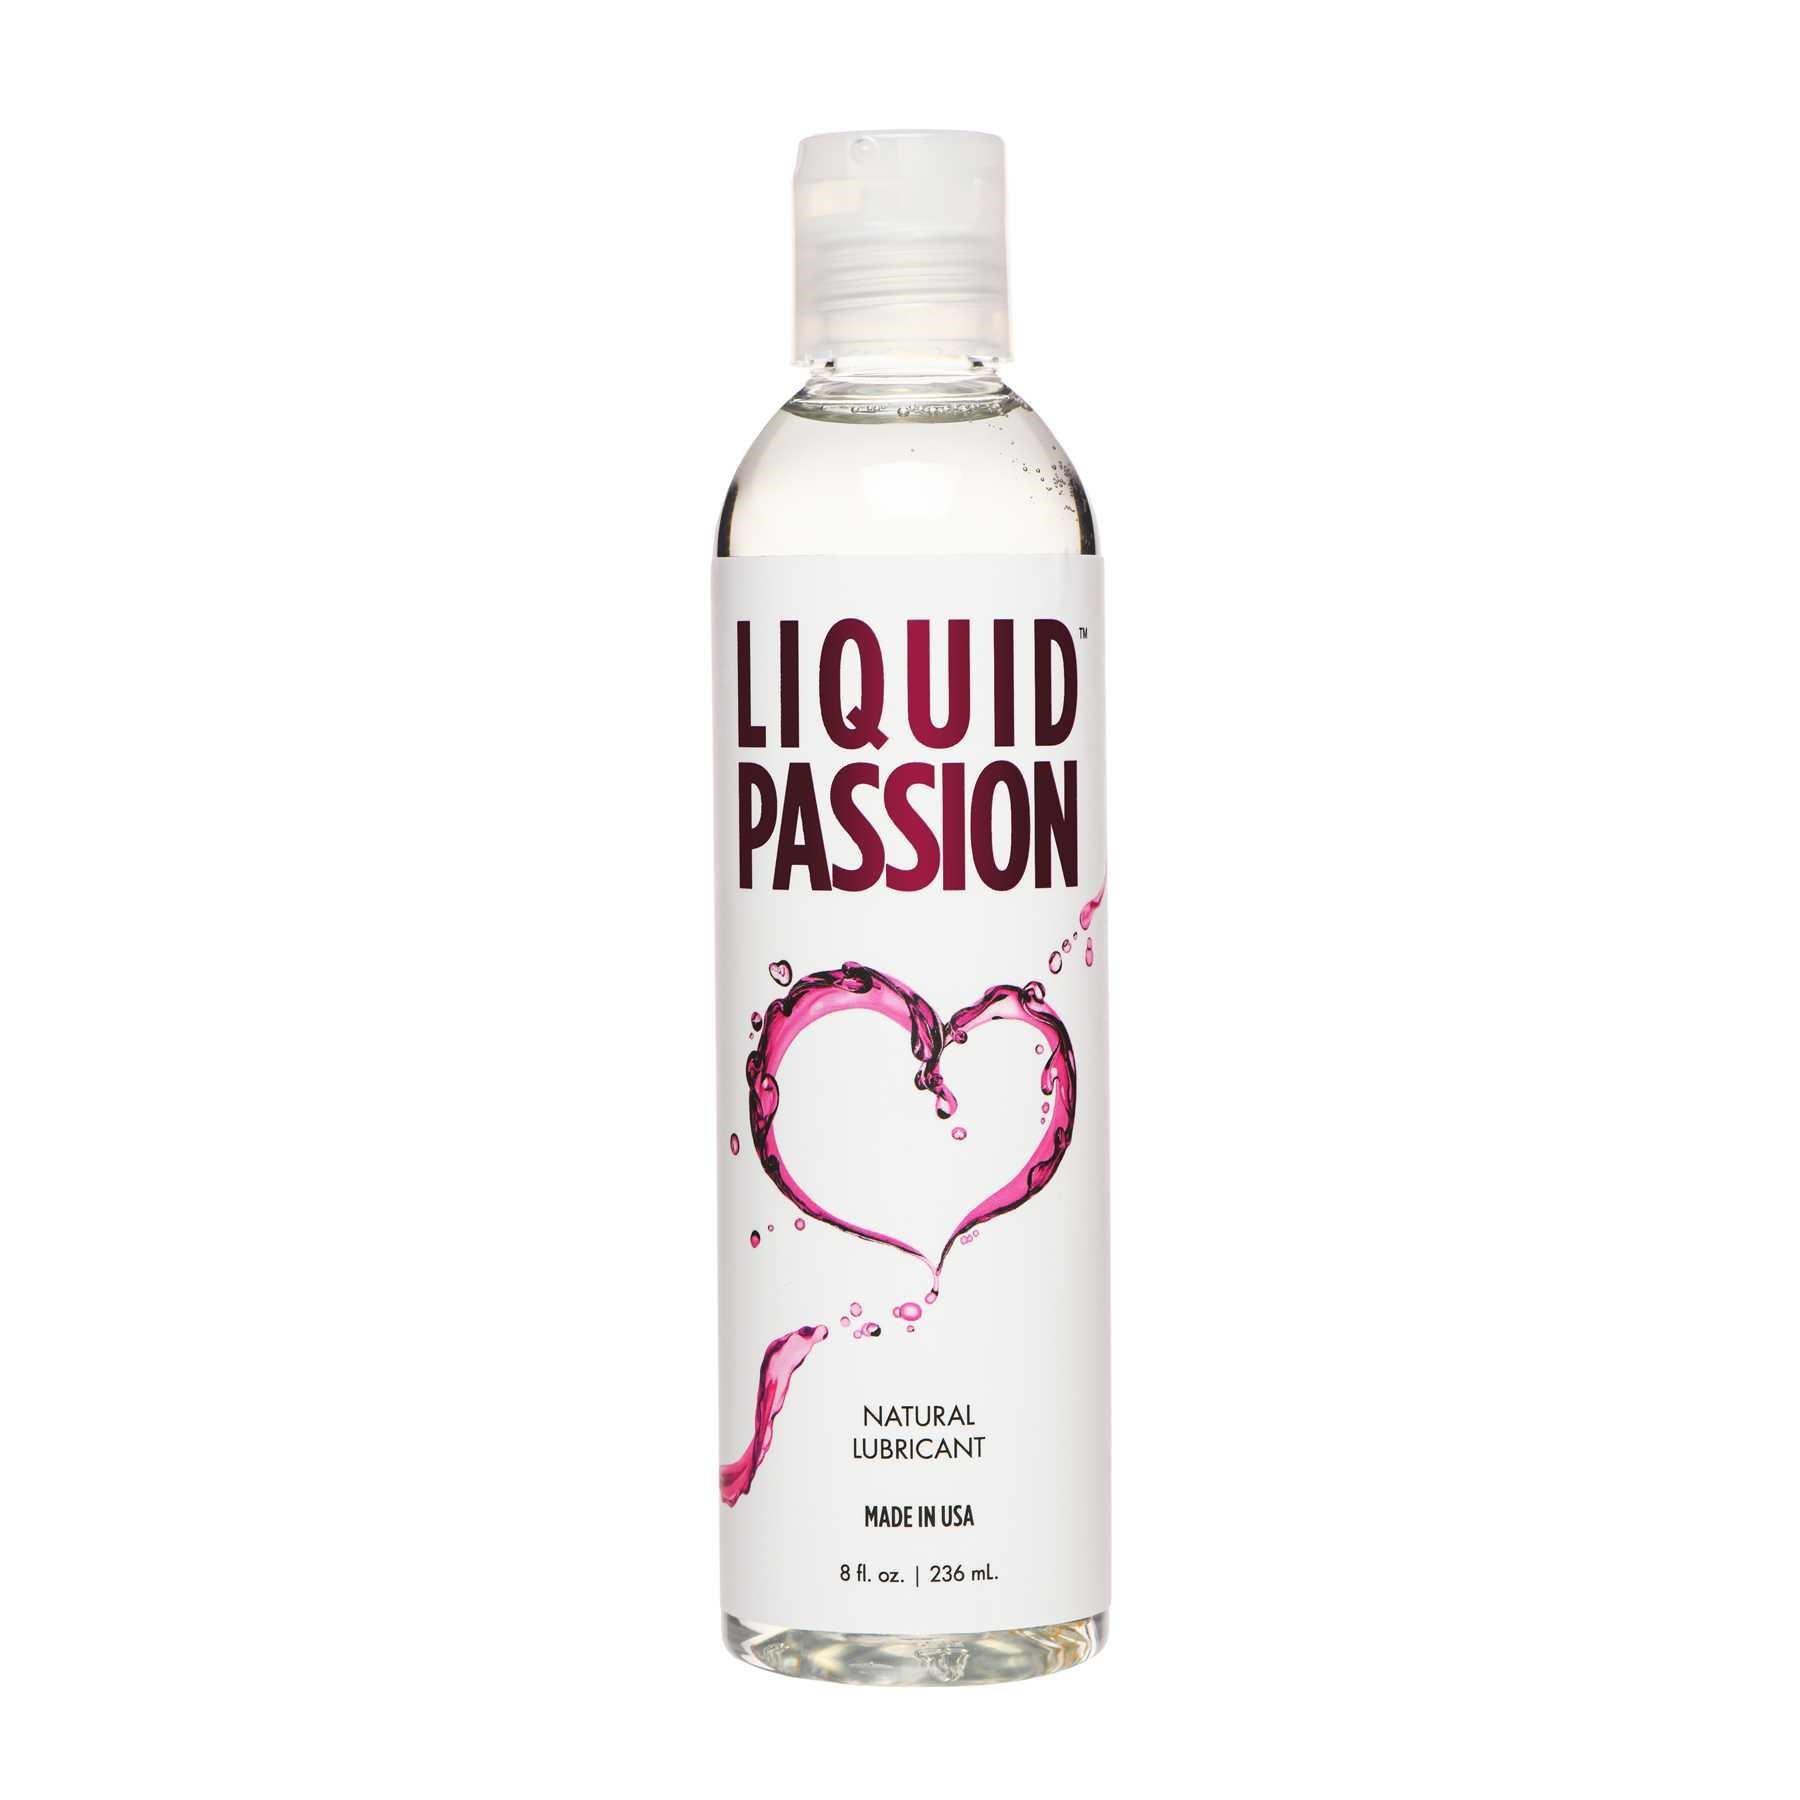 Liquid Passion bottle front